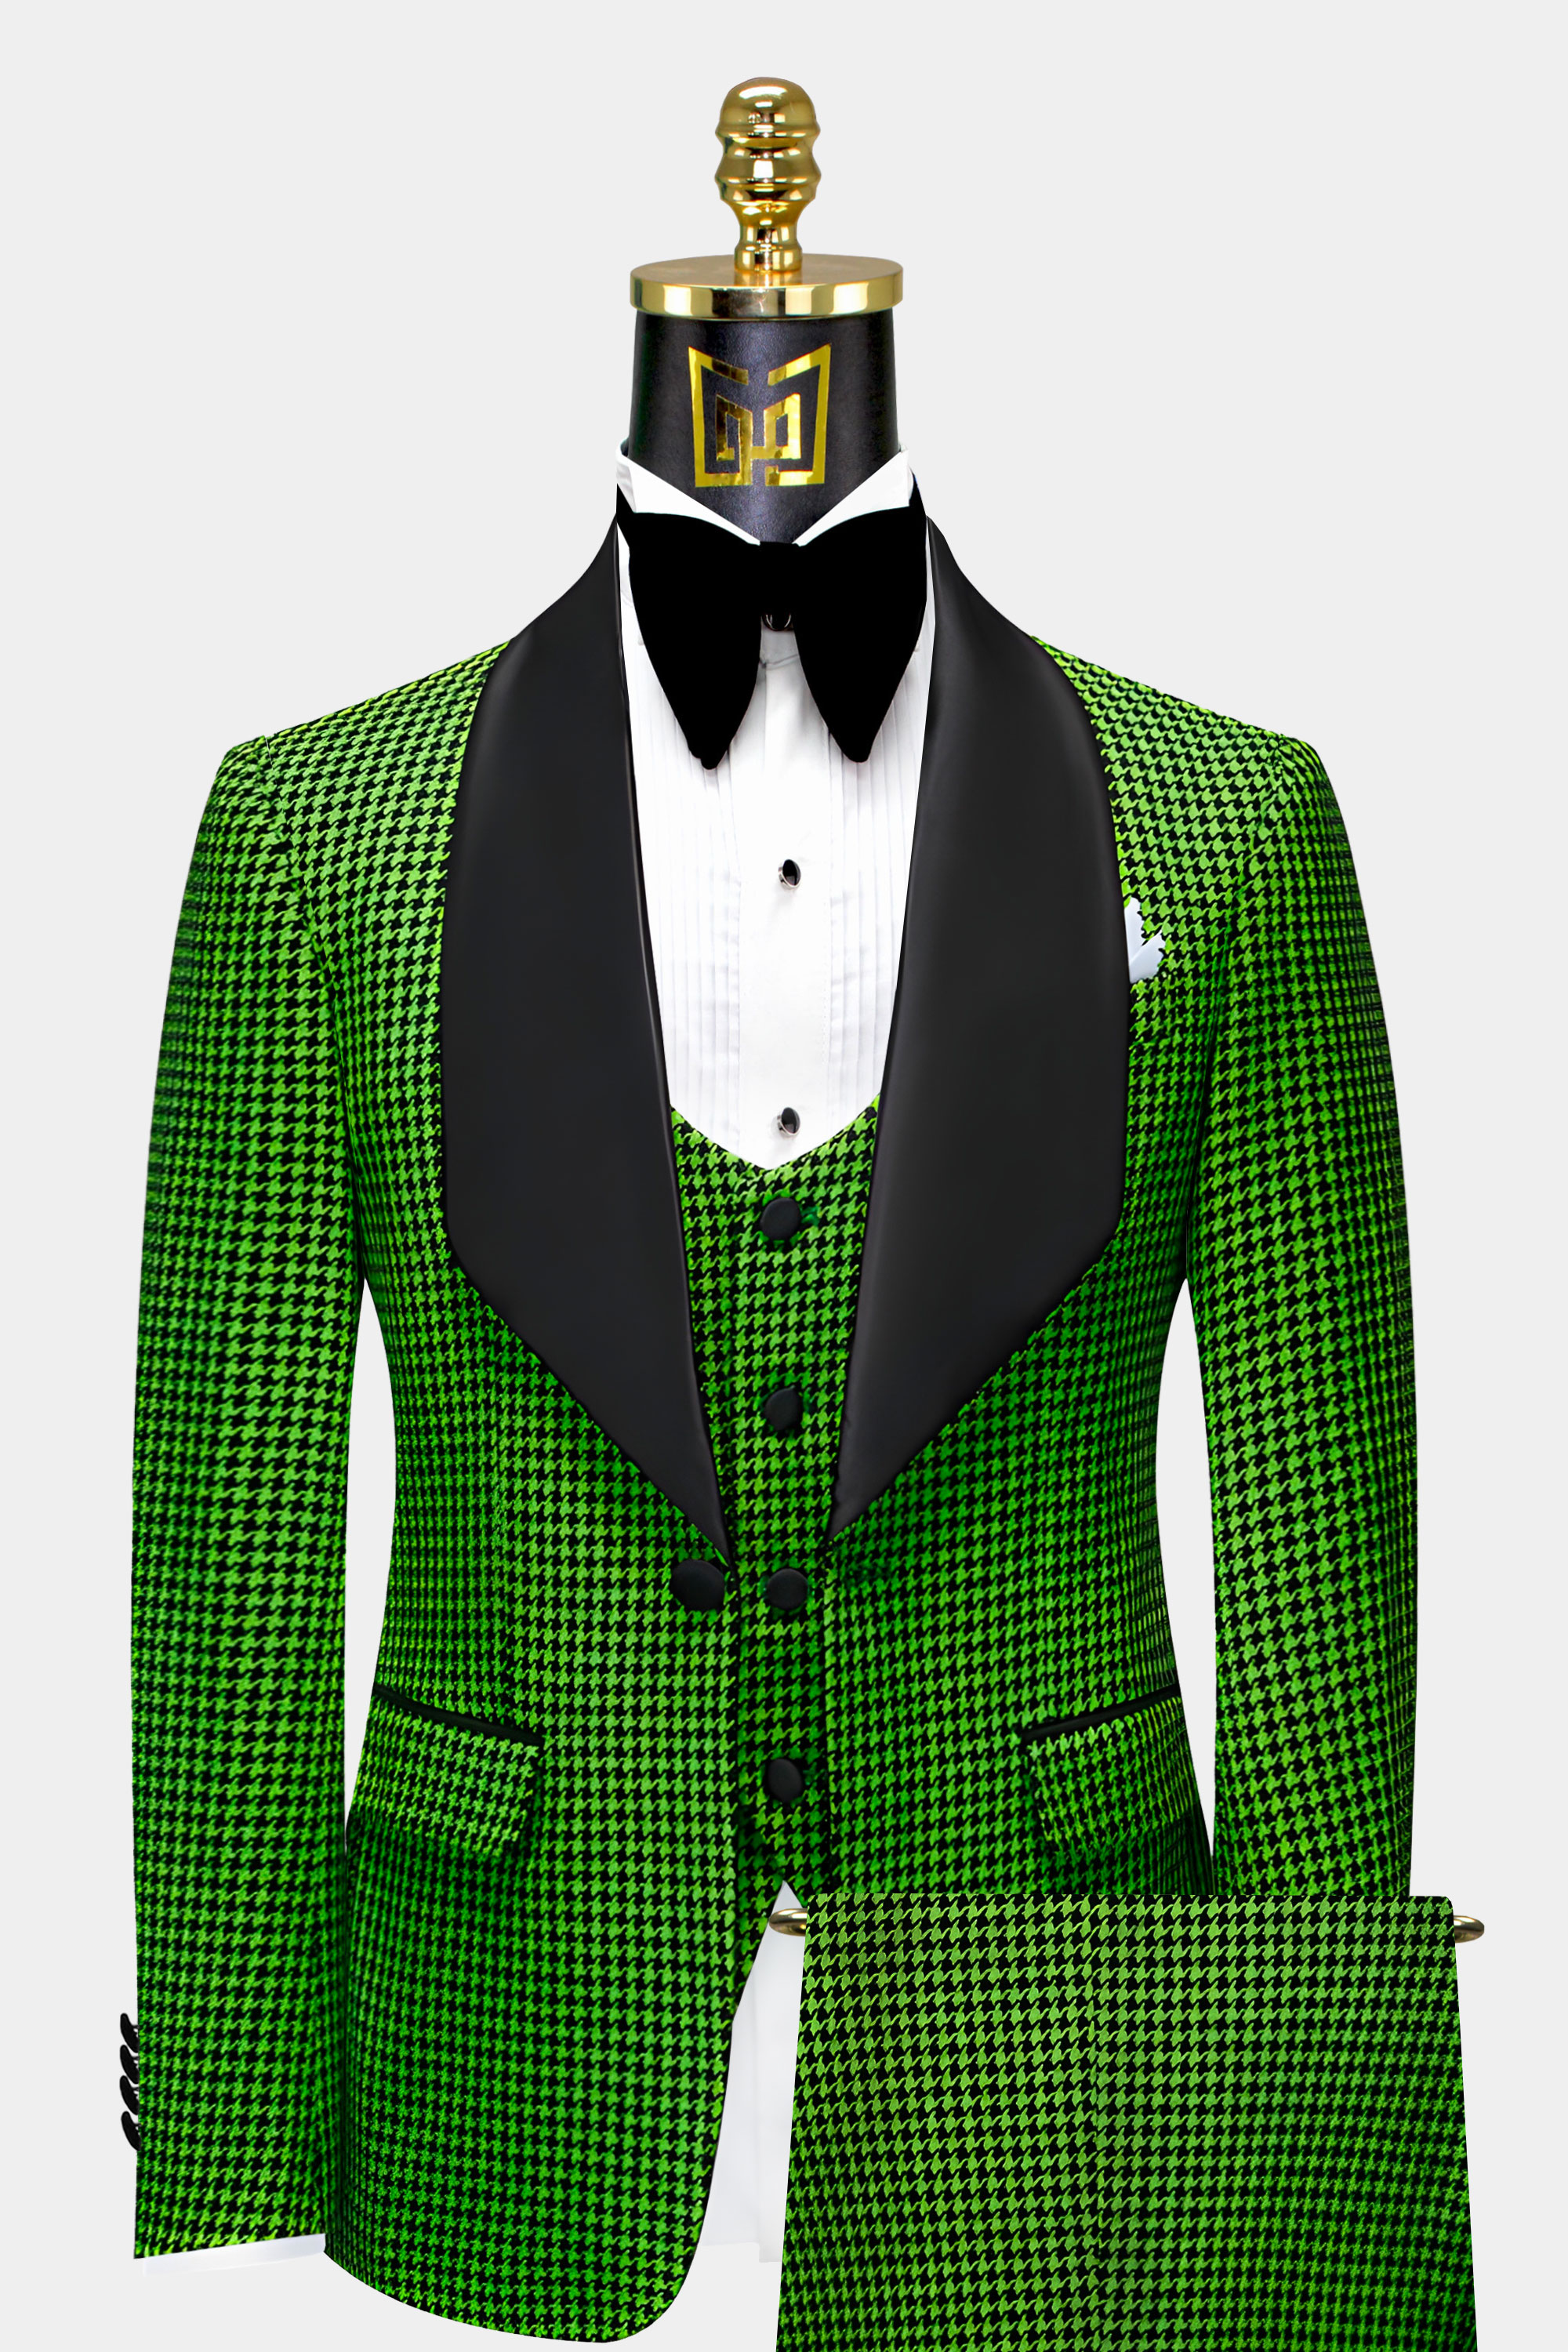 Green-Houndstooth-Tuxedo-Groom-Prom-Wedding-Suit-from-Gentlemansguru.com